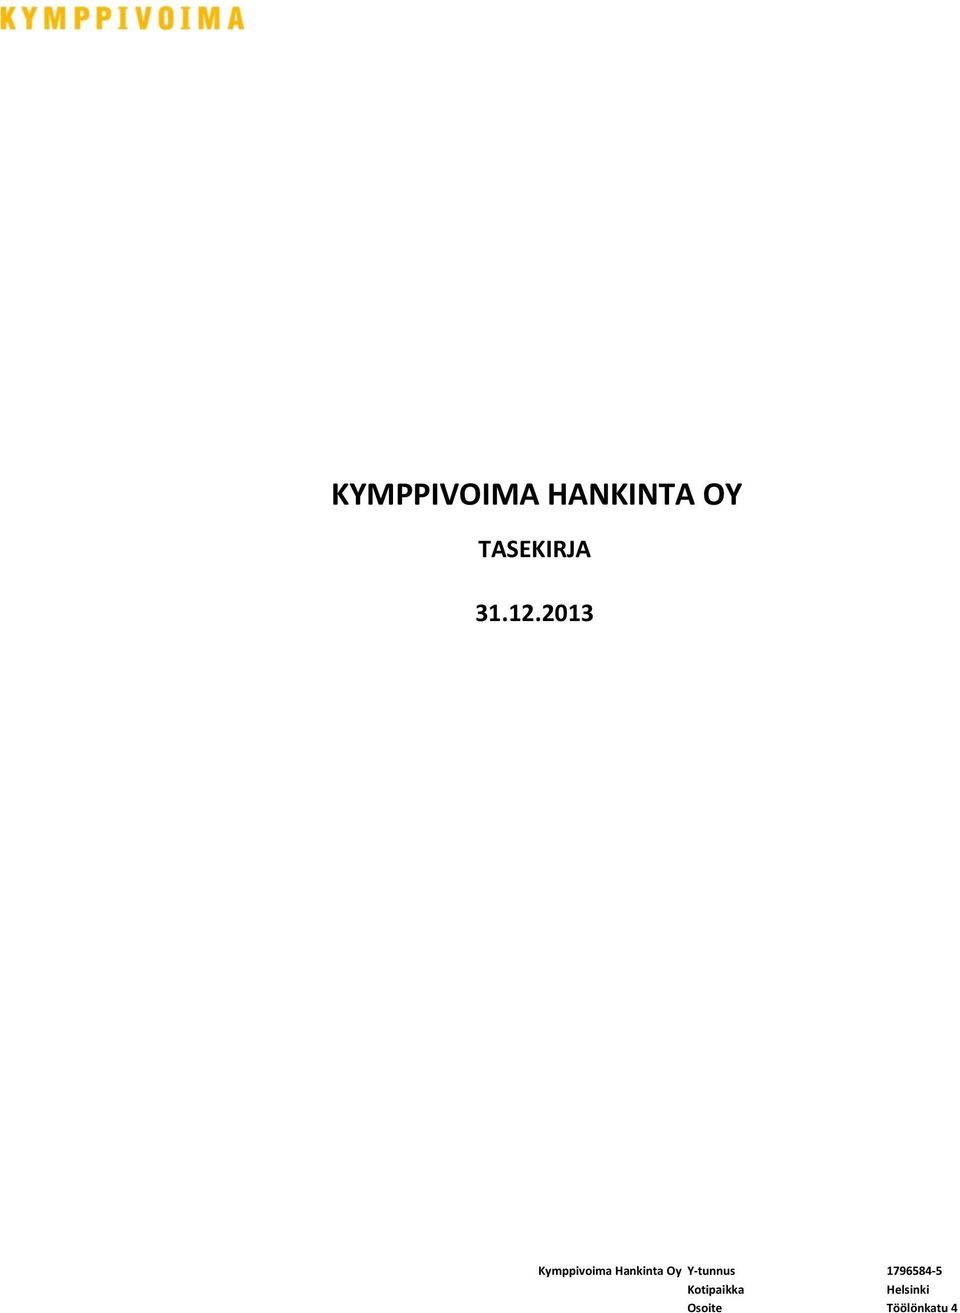 2013 Kymppivoima Hankinta Oy